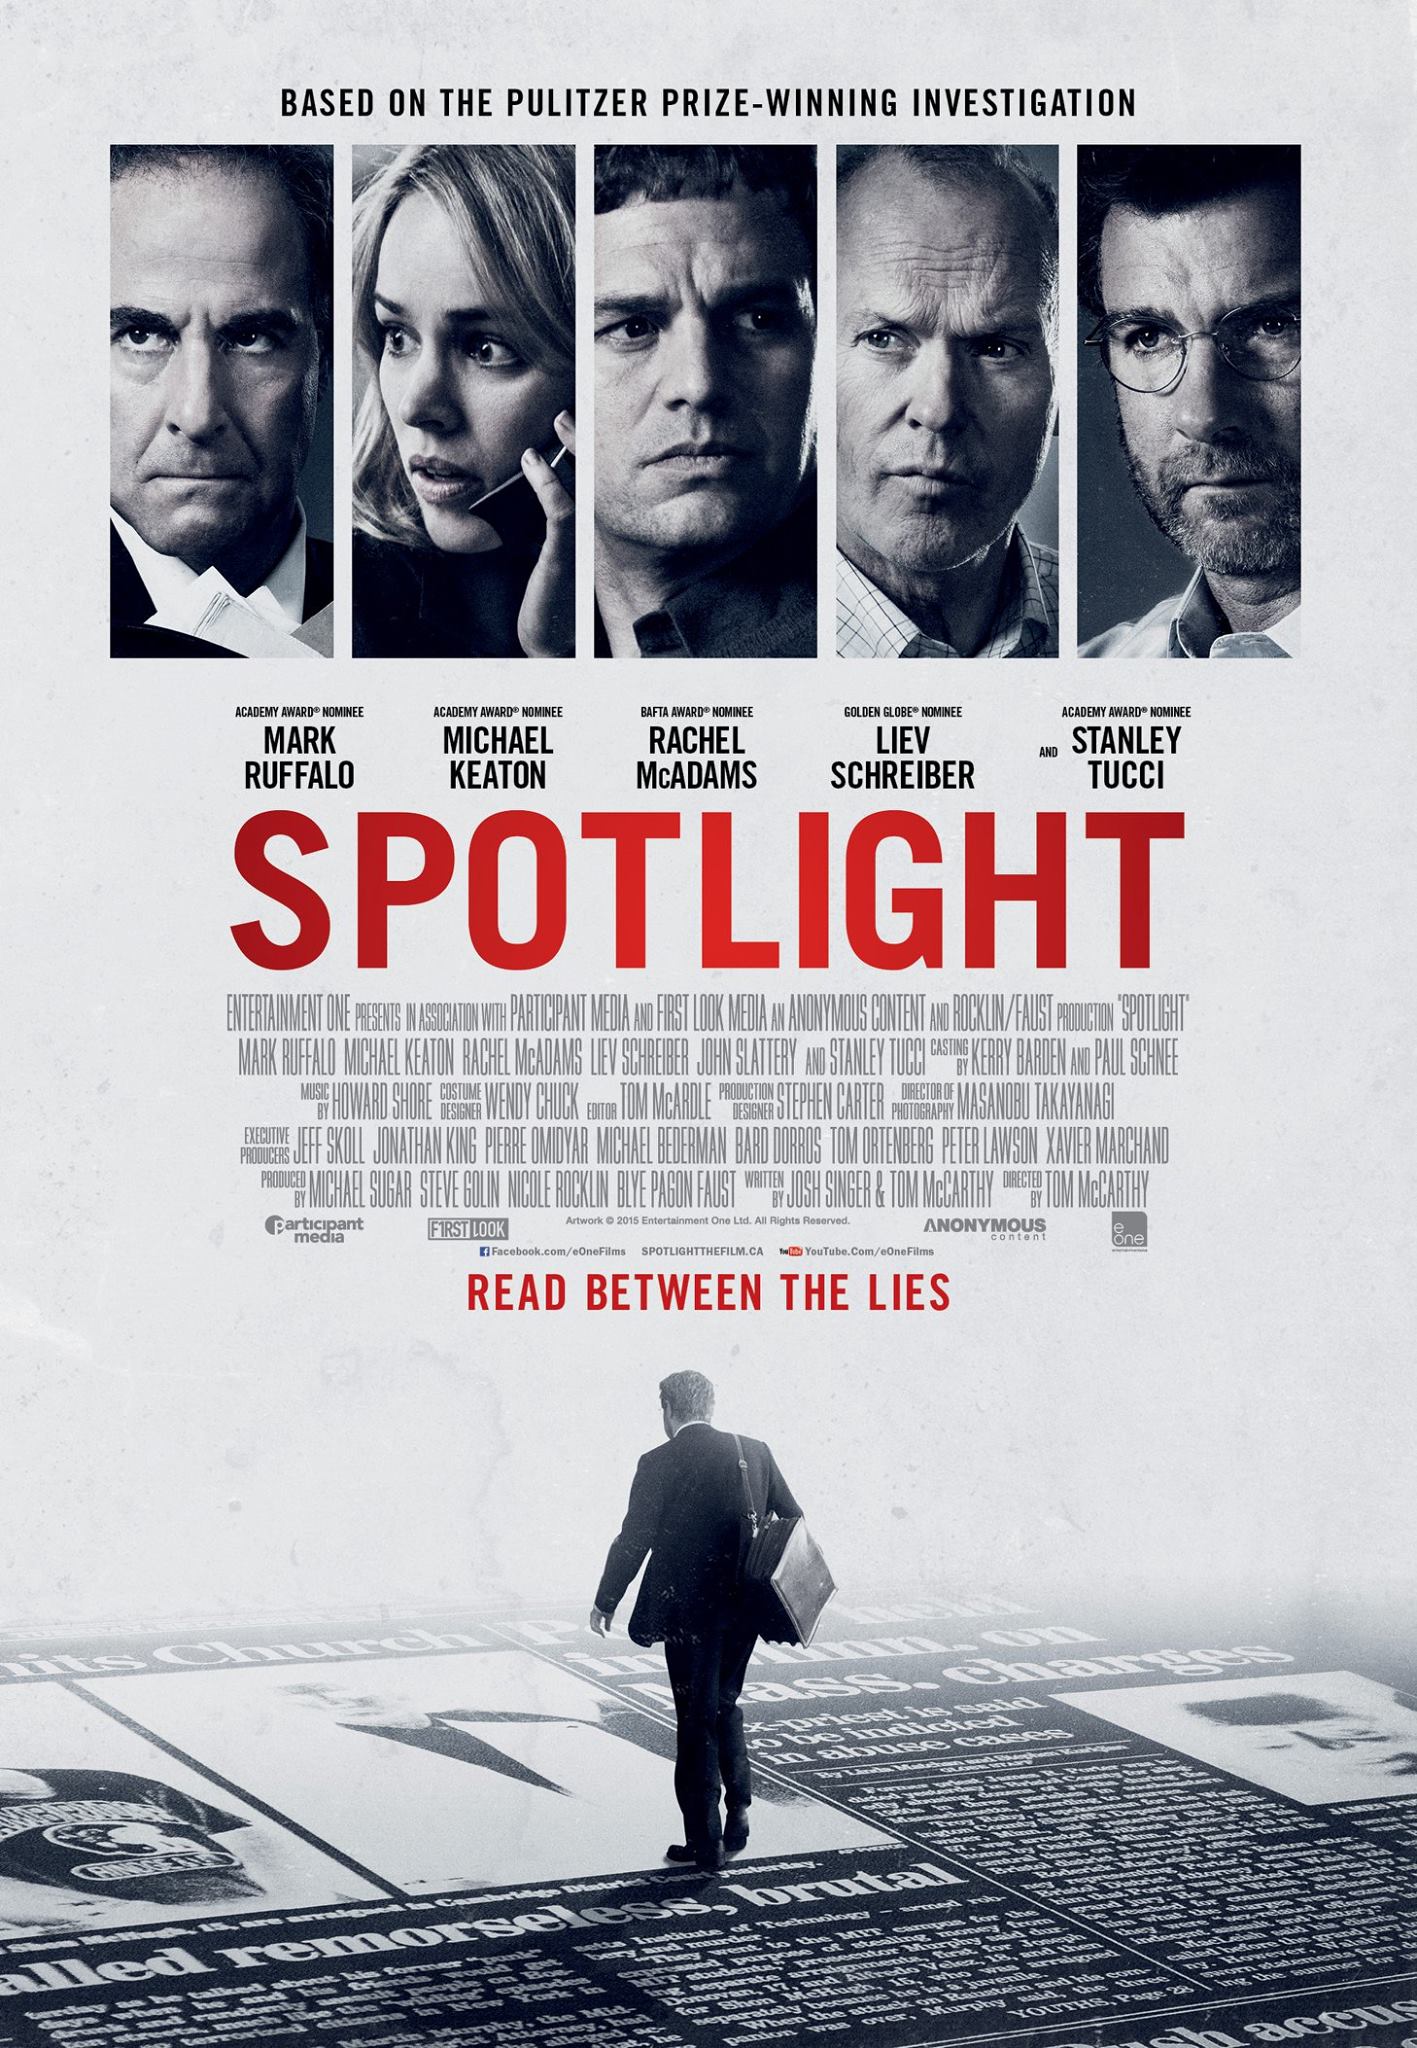 دانلود فیلم Spotlight 2015